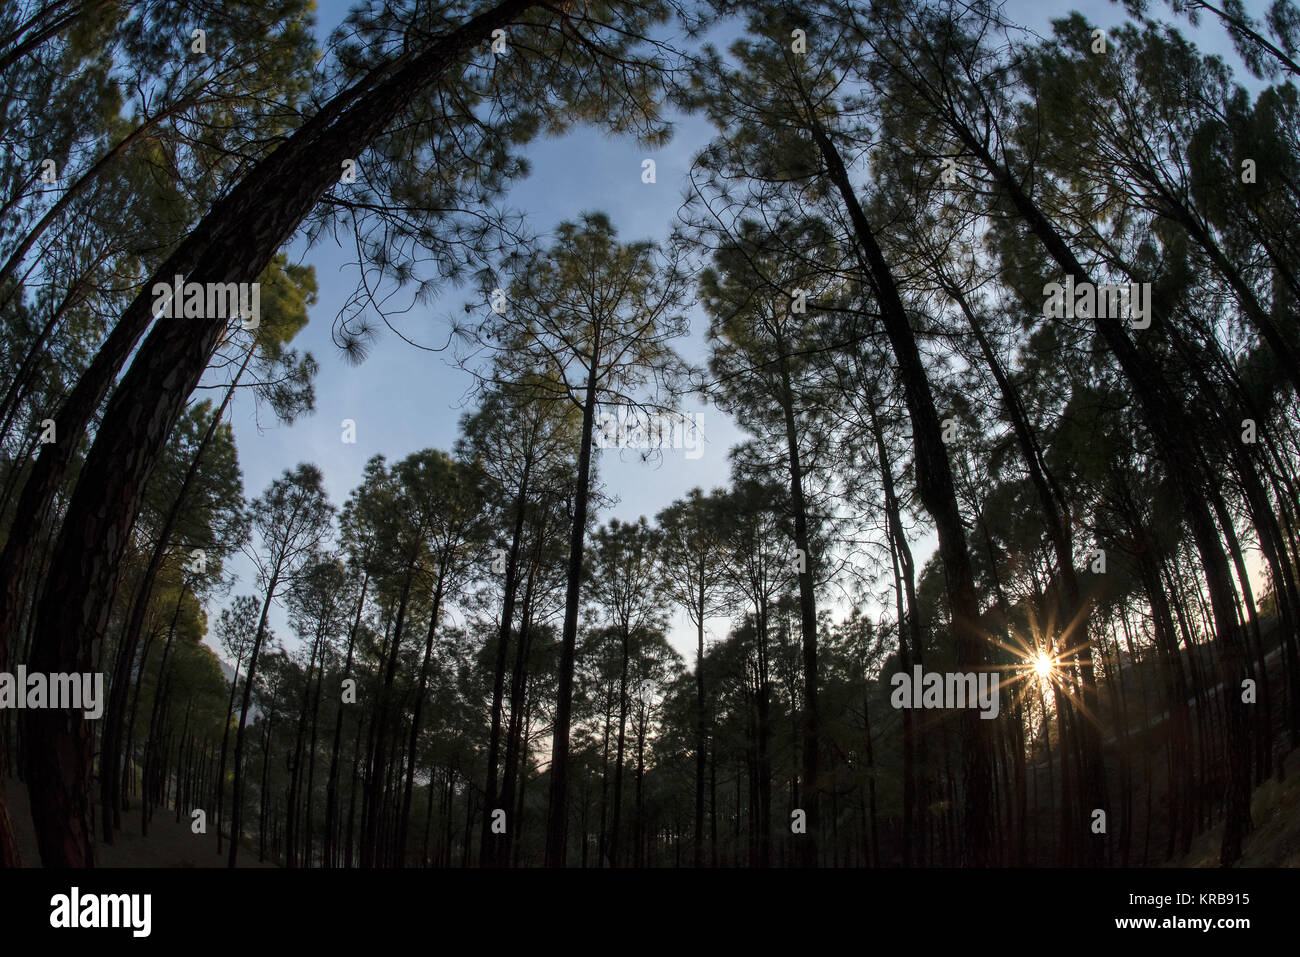 The image of Landscape with pine trees at Kotdwar, Uttarakhand, India Stock Photo